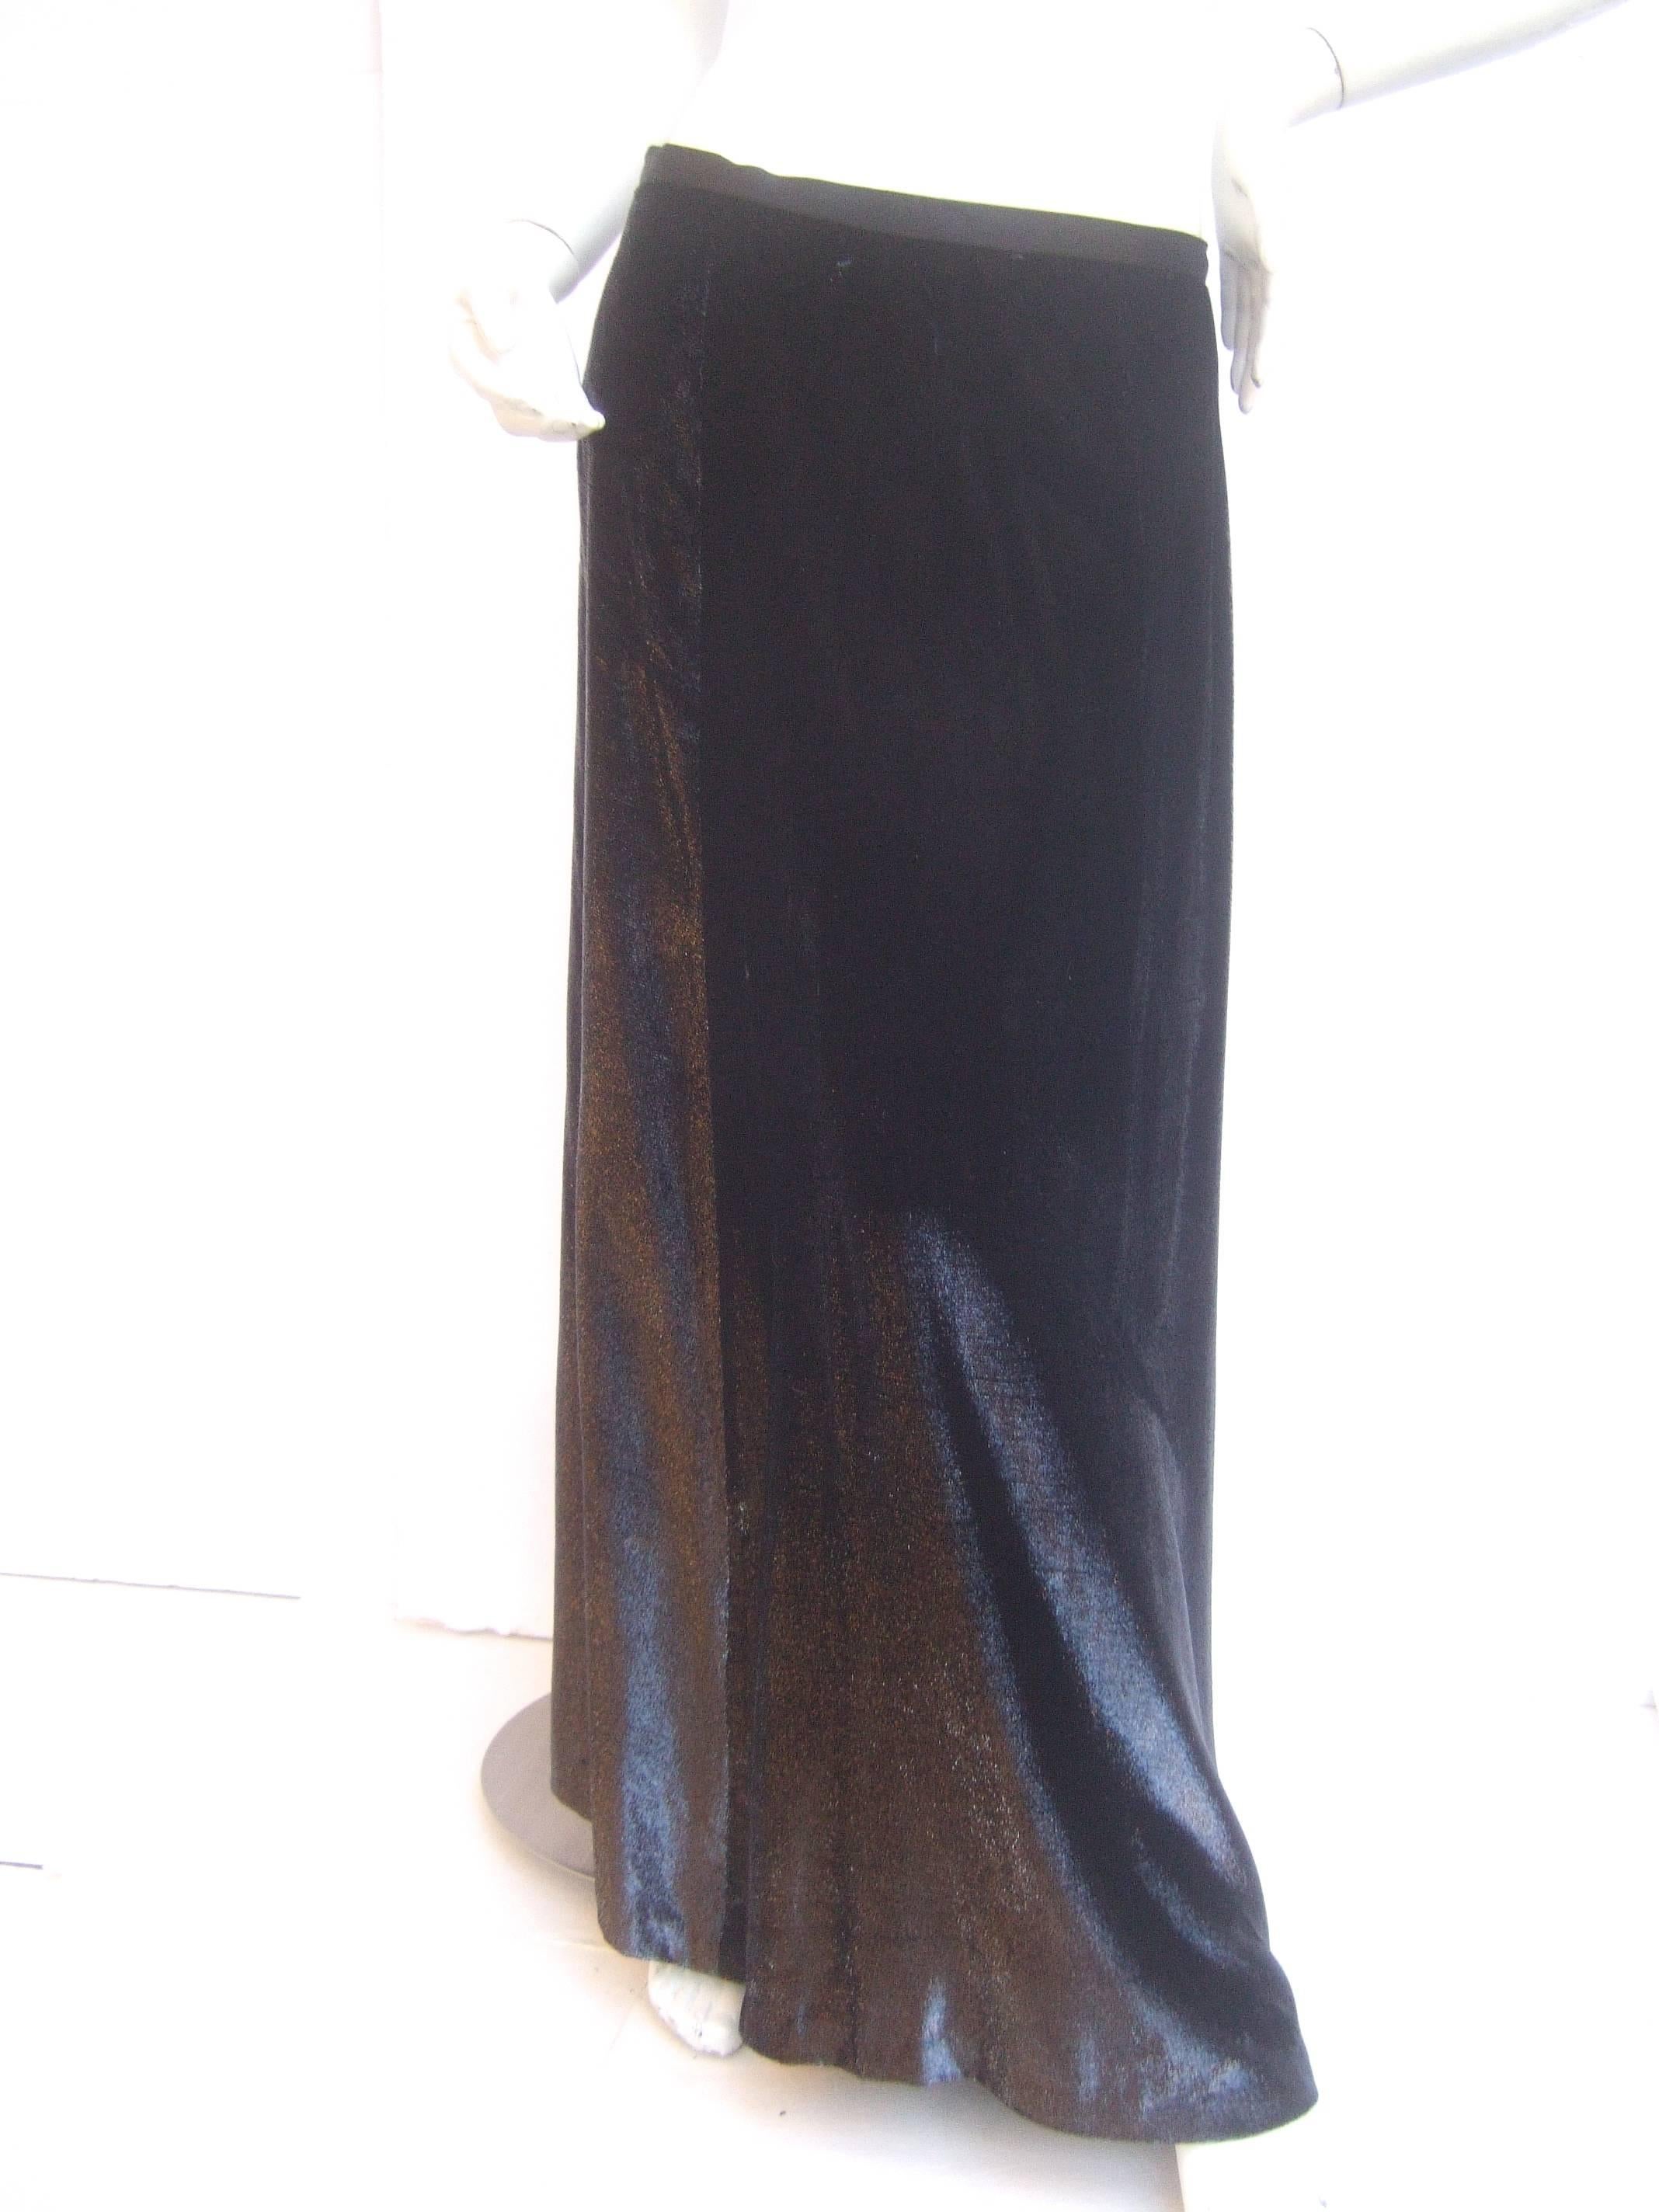 black silk skirt